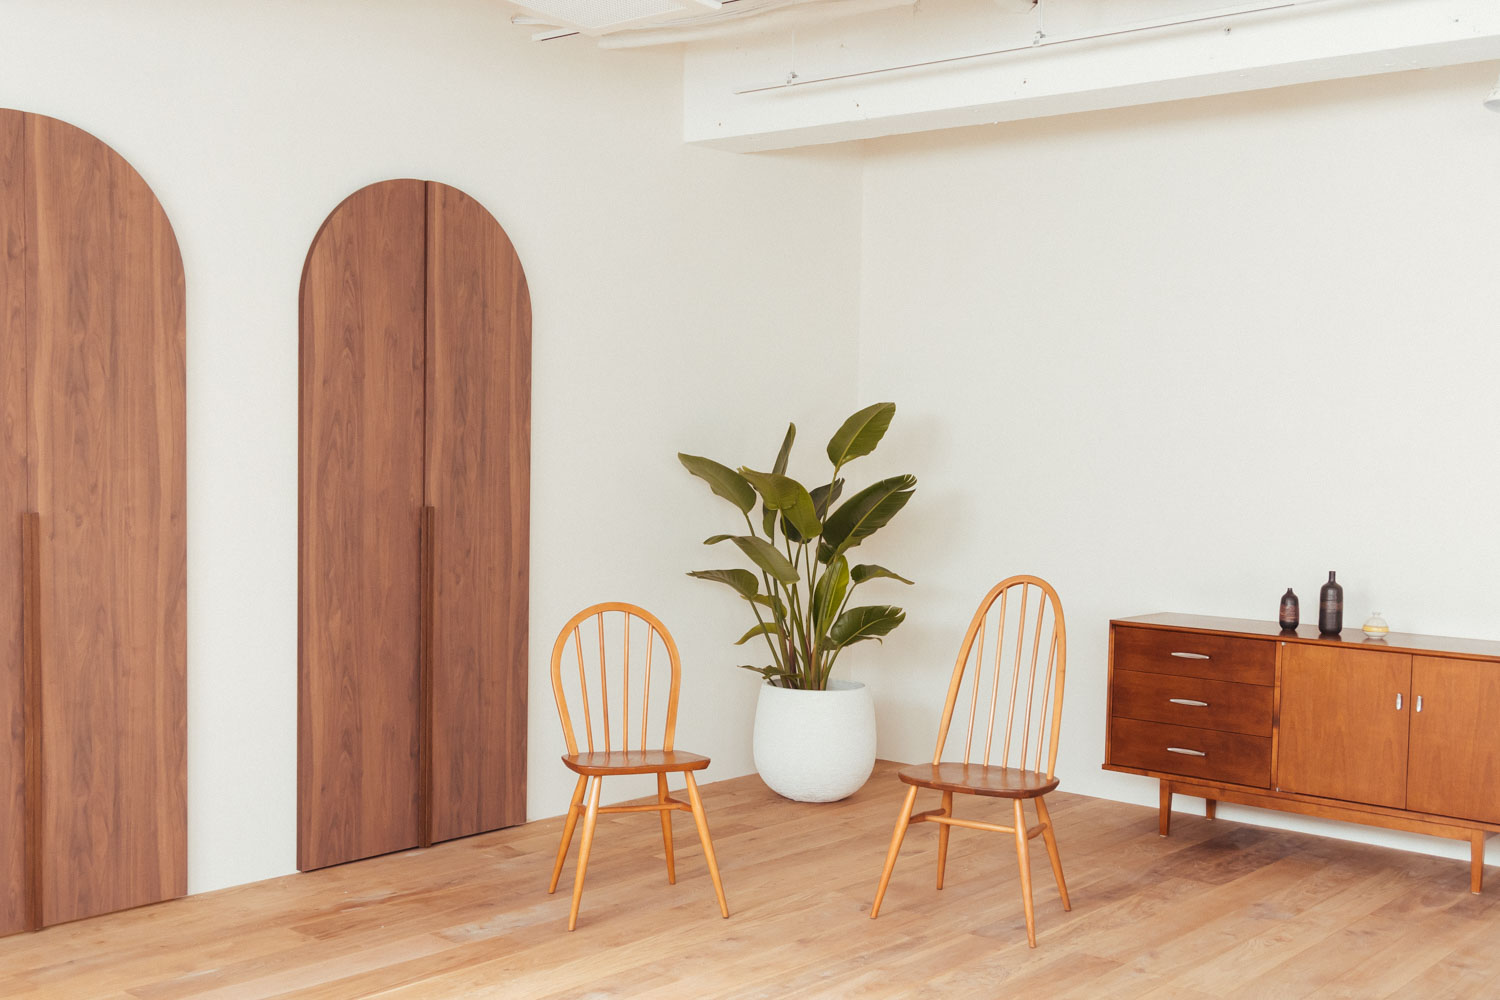 円形の木製ドアがあるフローリングの部屋に、アーコールチェア2脚と観葉植物、チェストが配置された写真